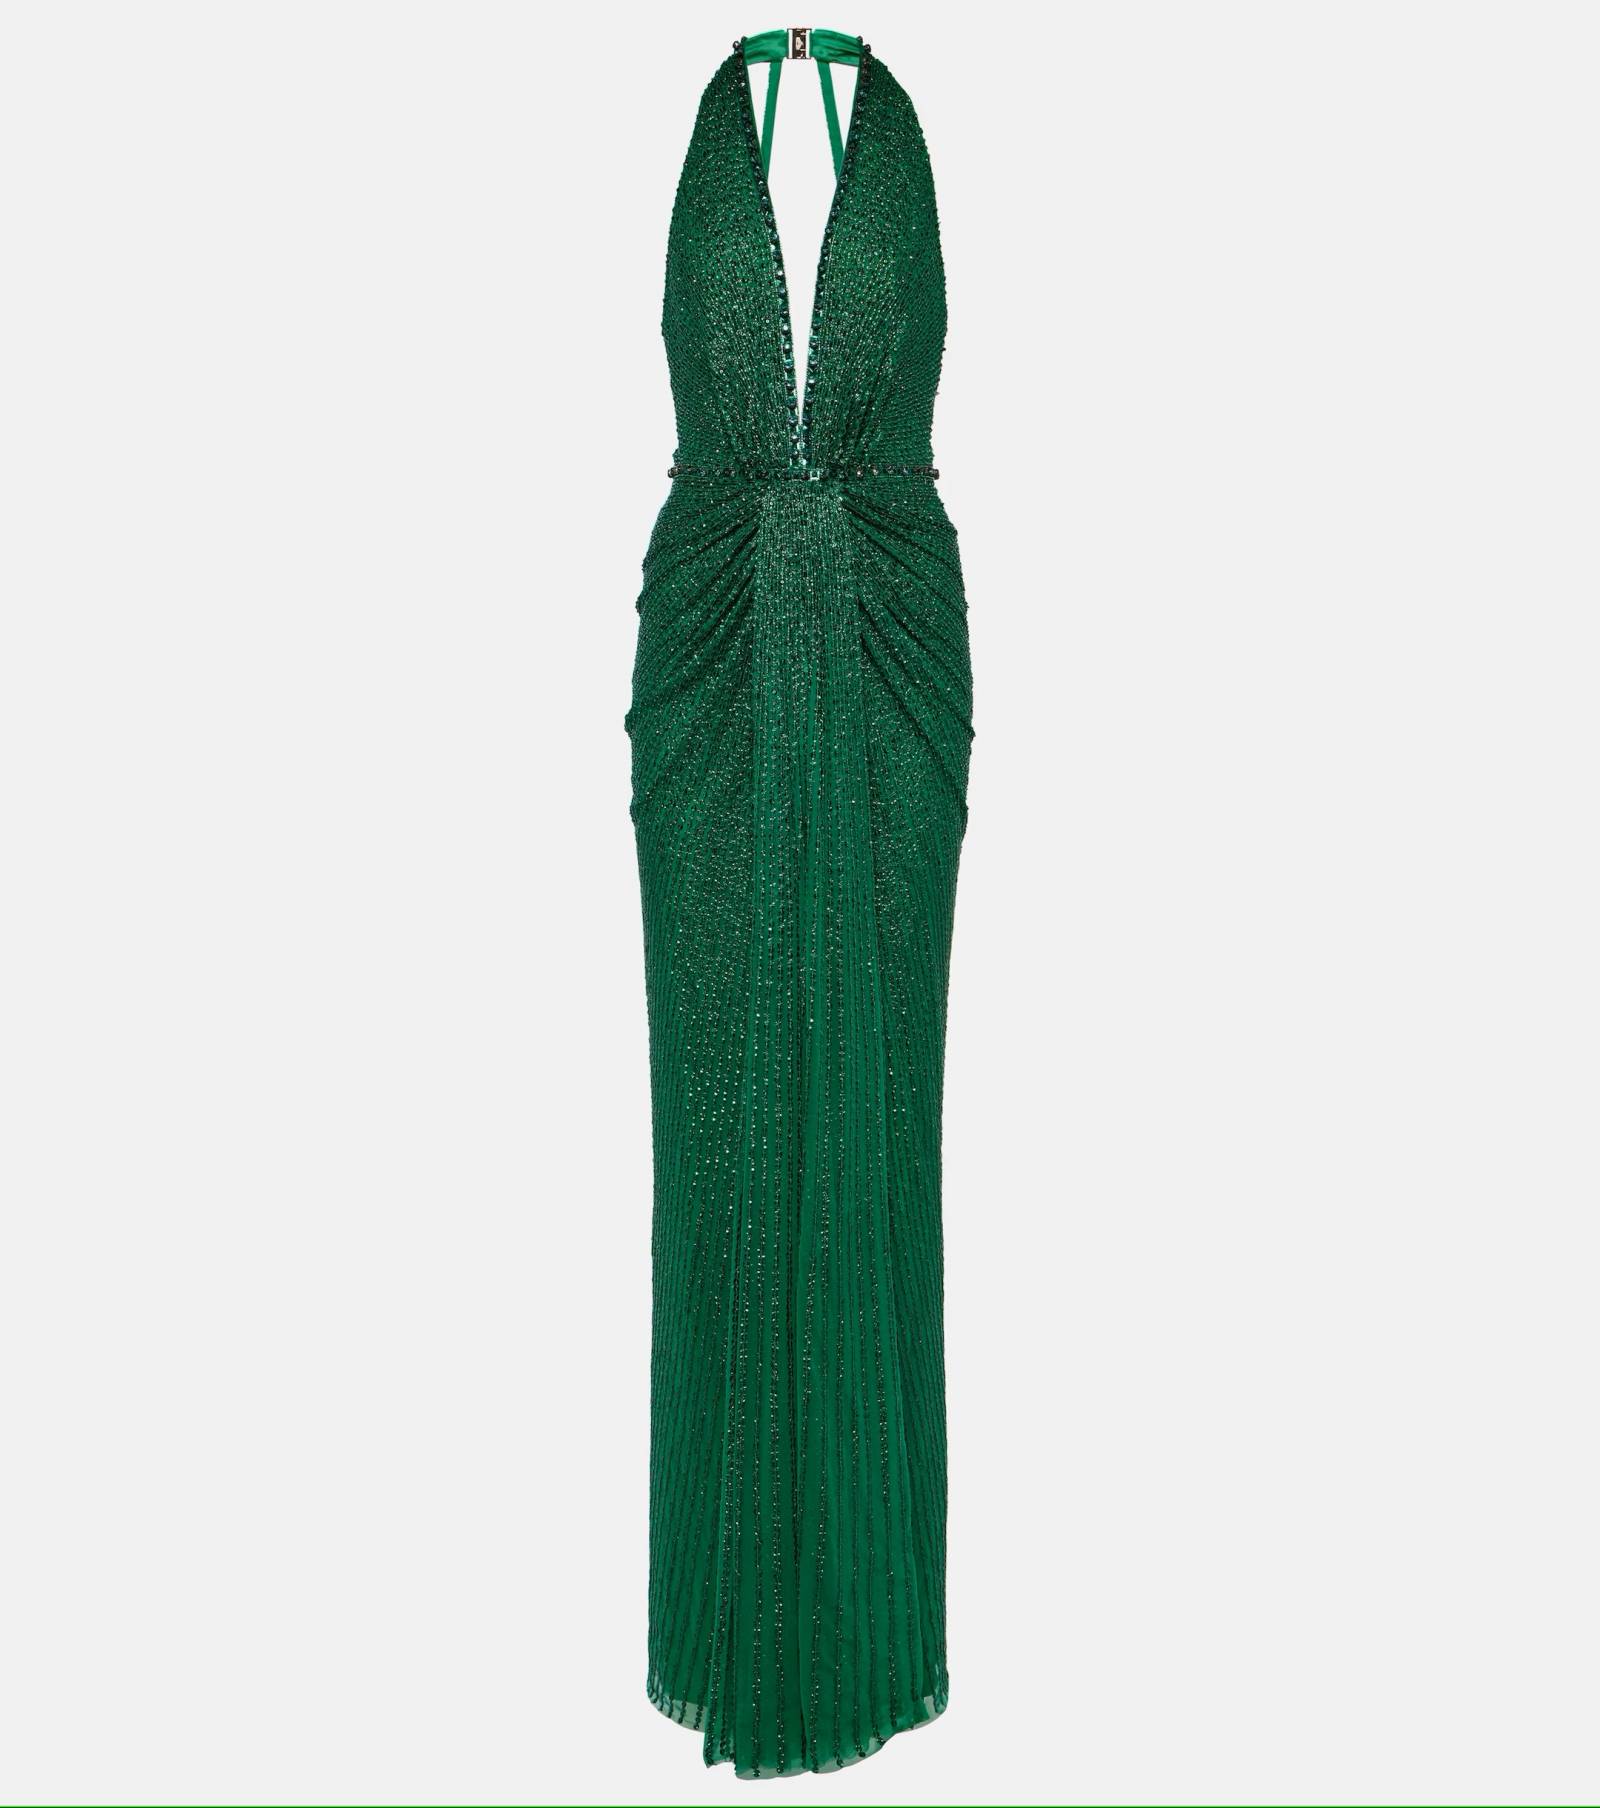 Szmaragdowa sukienka z cekinami Jenny Packham / (Fot. Materiały prasowe)